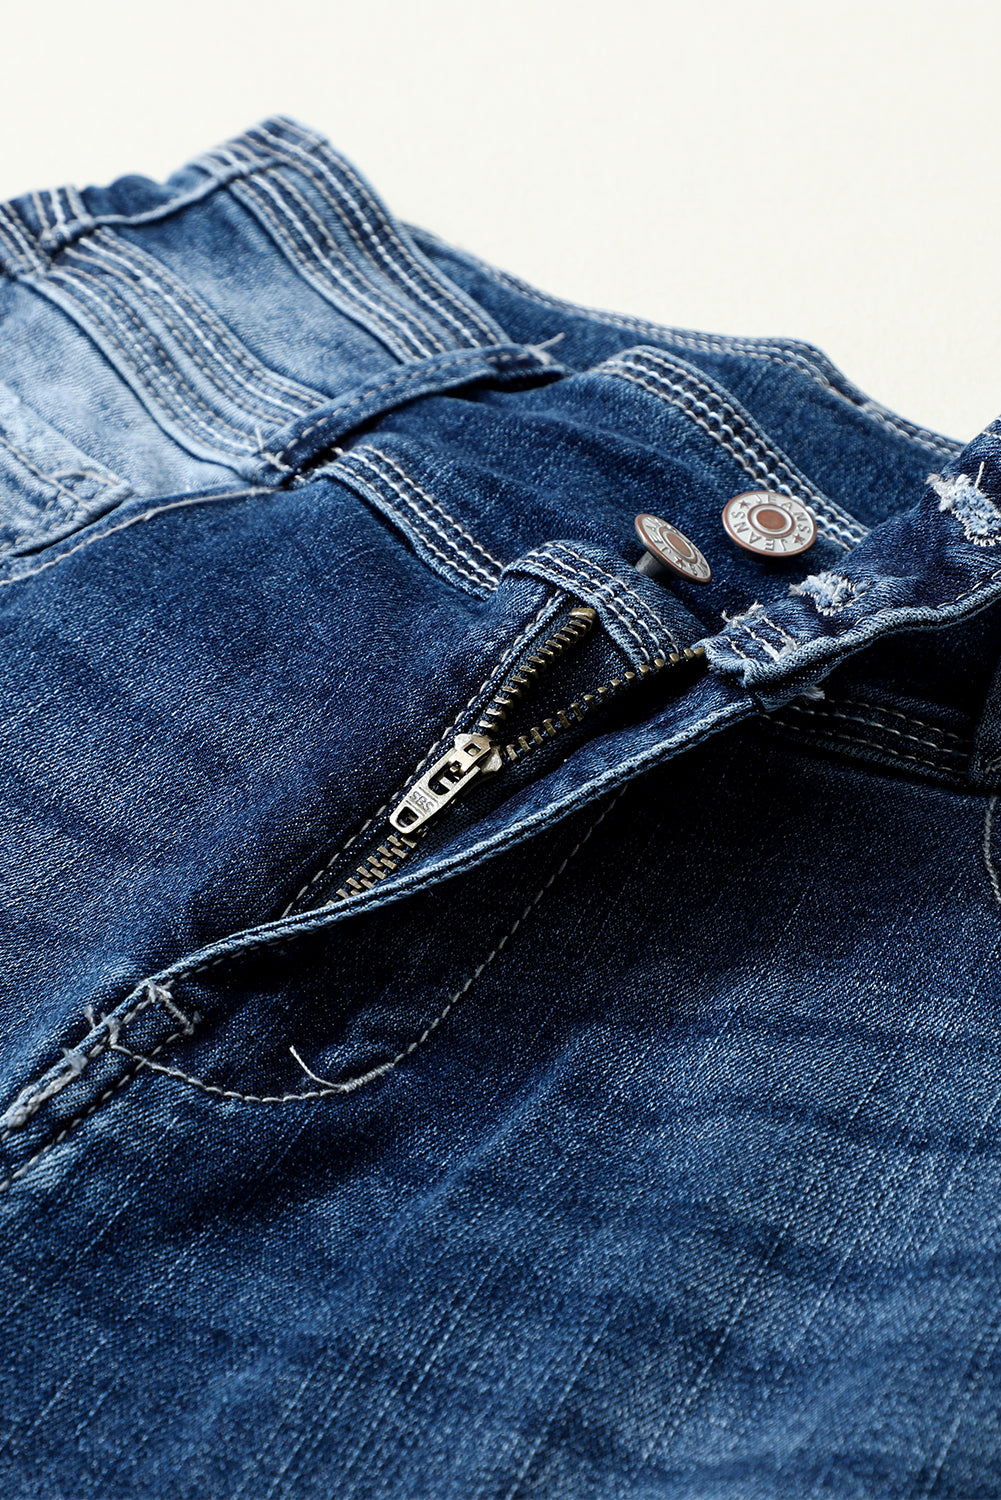 Plave vintage isprane uske traperice s dva gumba visokog struka